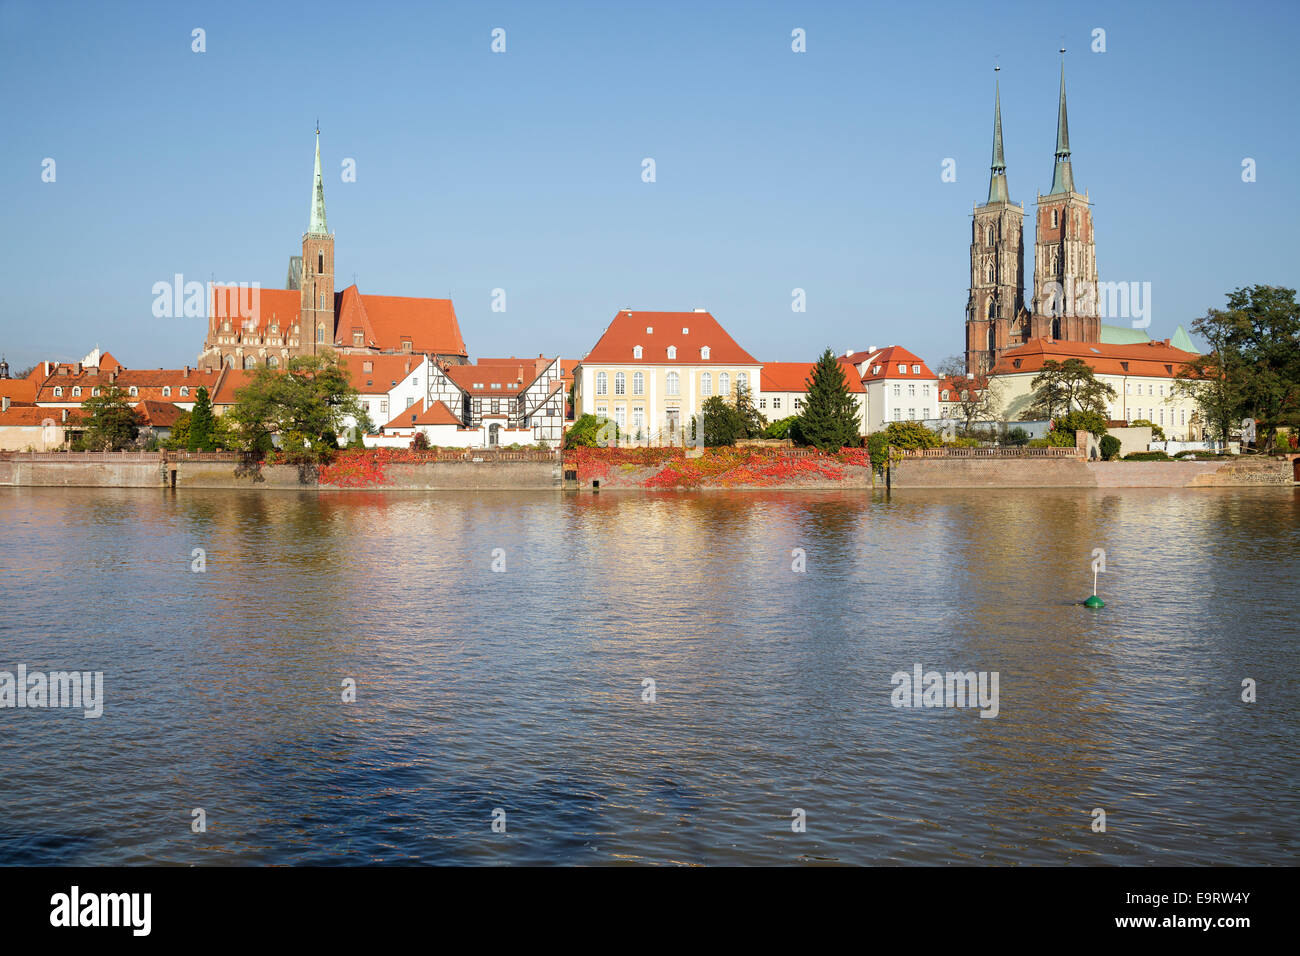 Île Ostrow Tumski, la cathédrale de Wroclaw, Pologne Banque D'Images